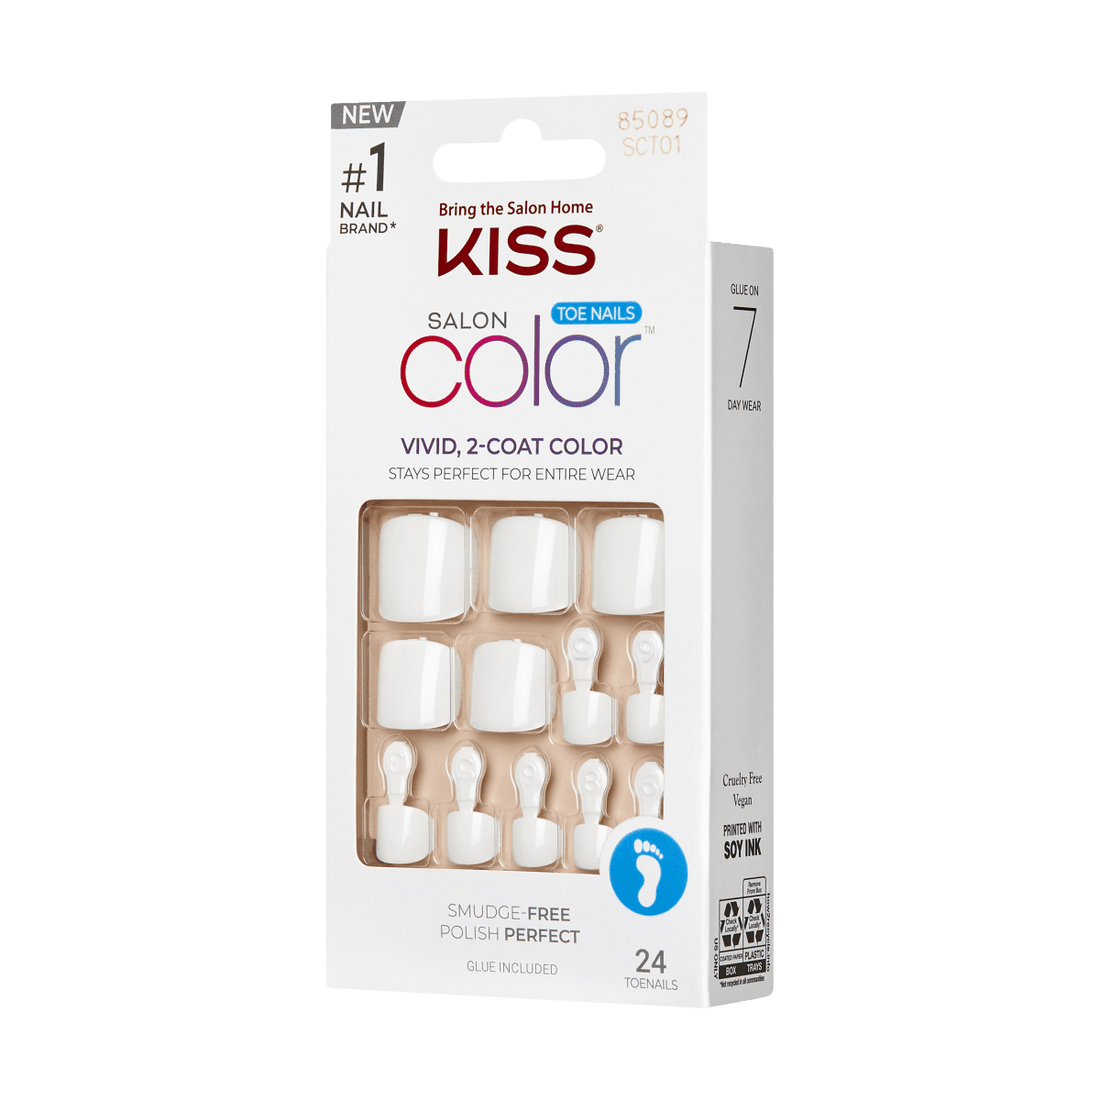 KISS Salon Color Toenails - A Classic